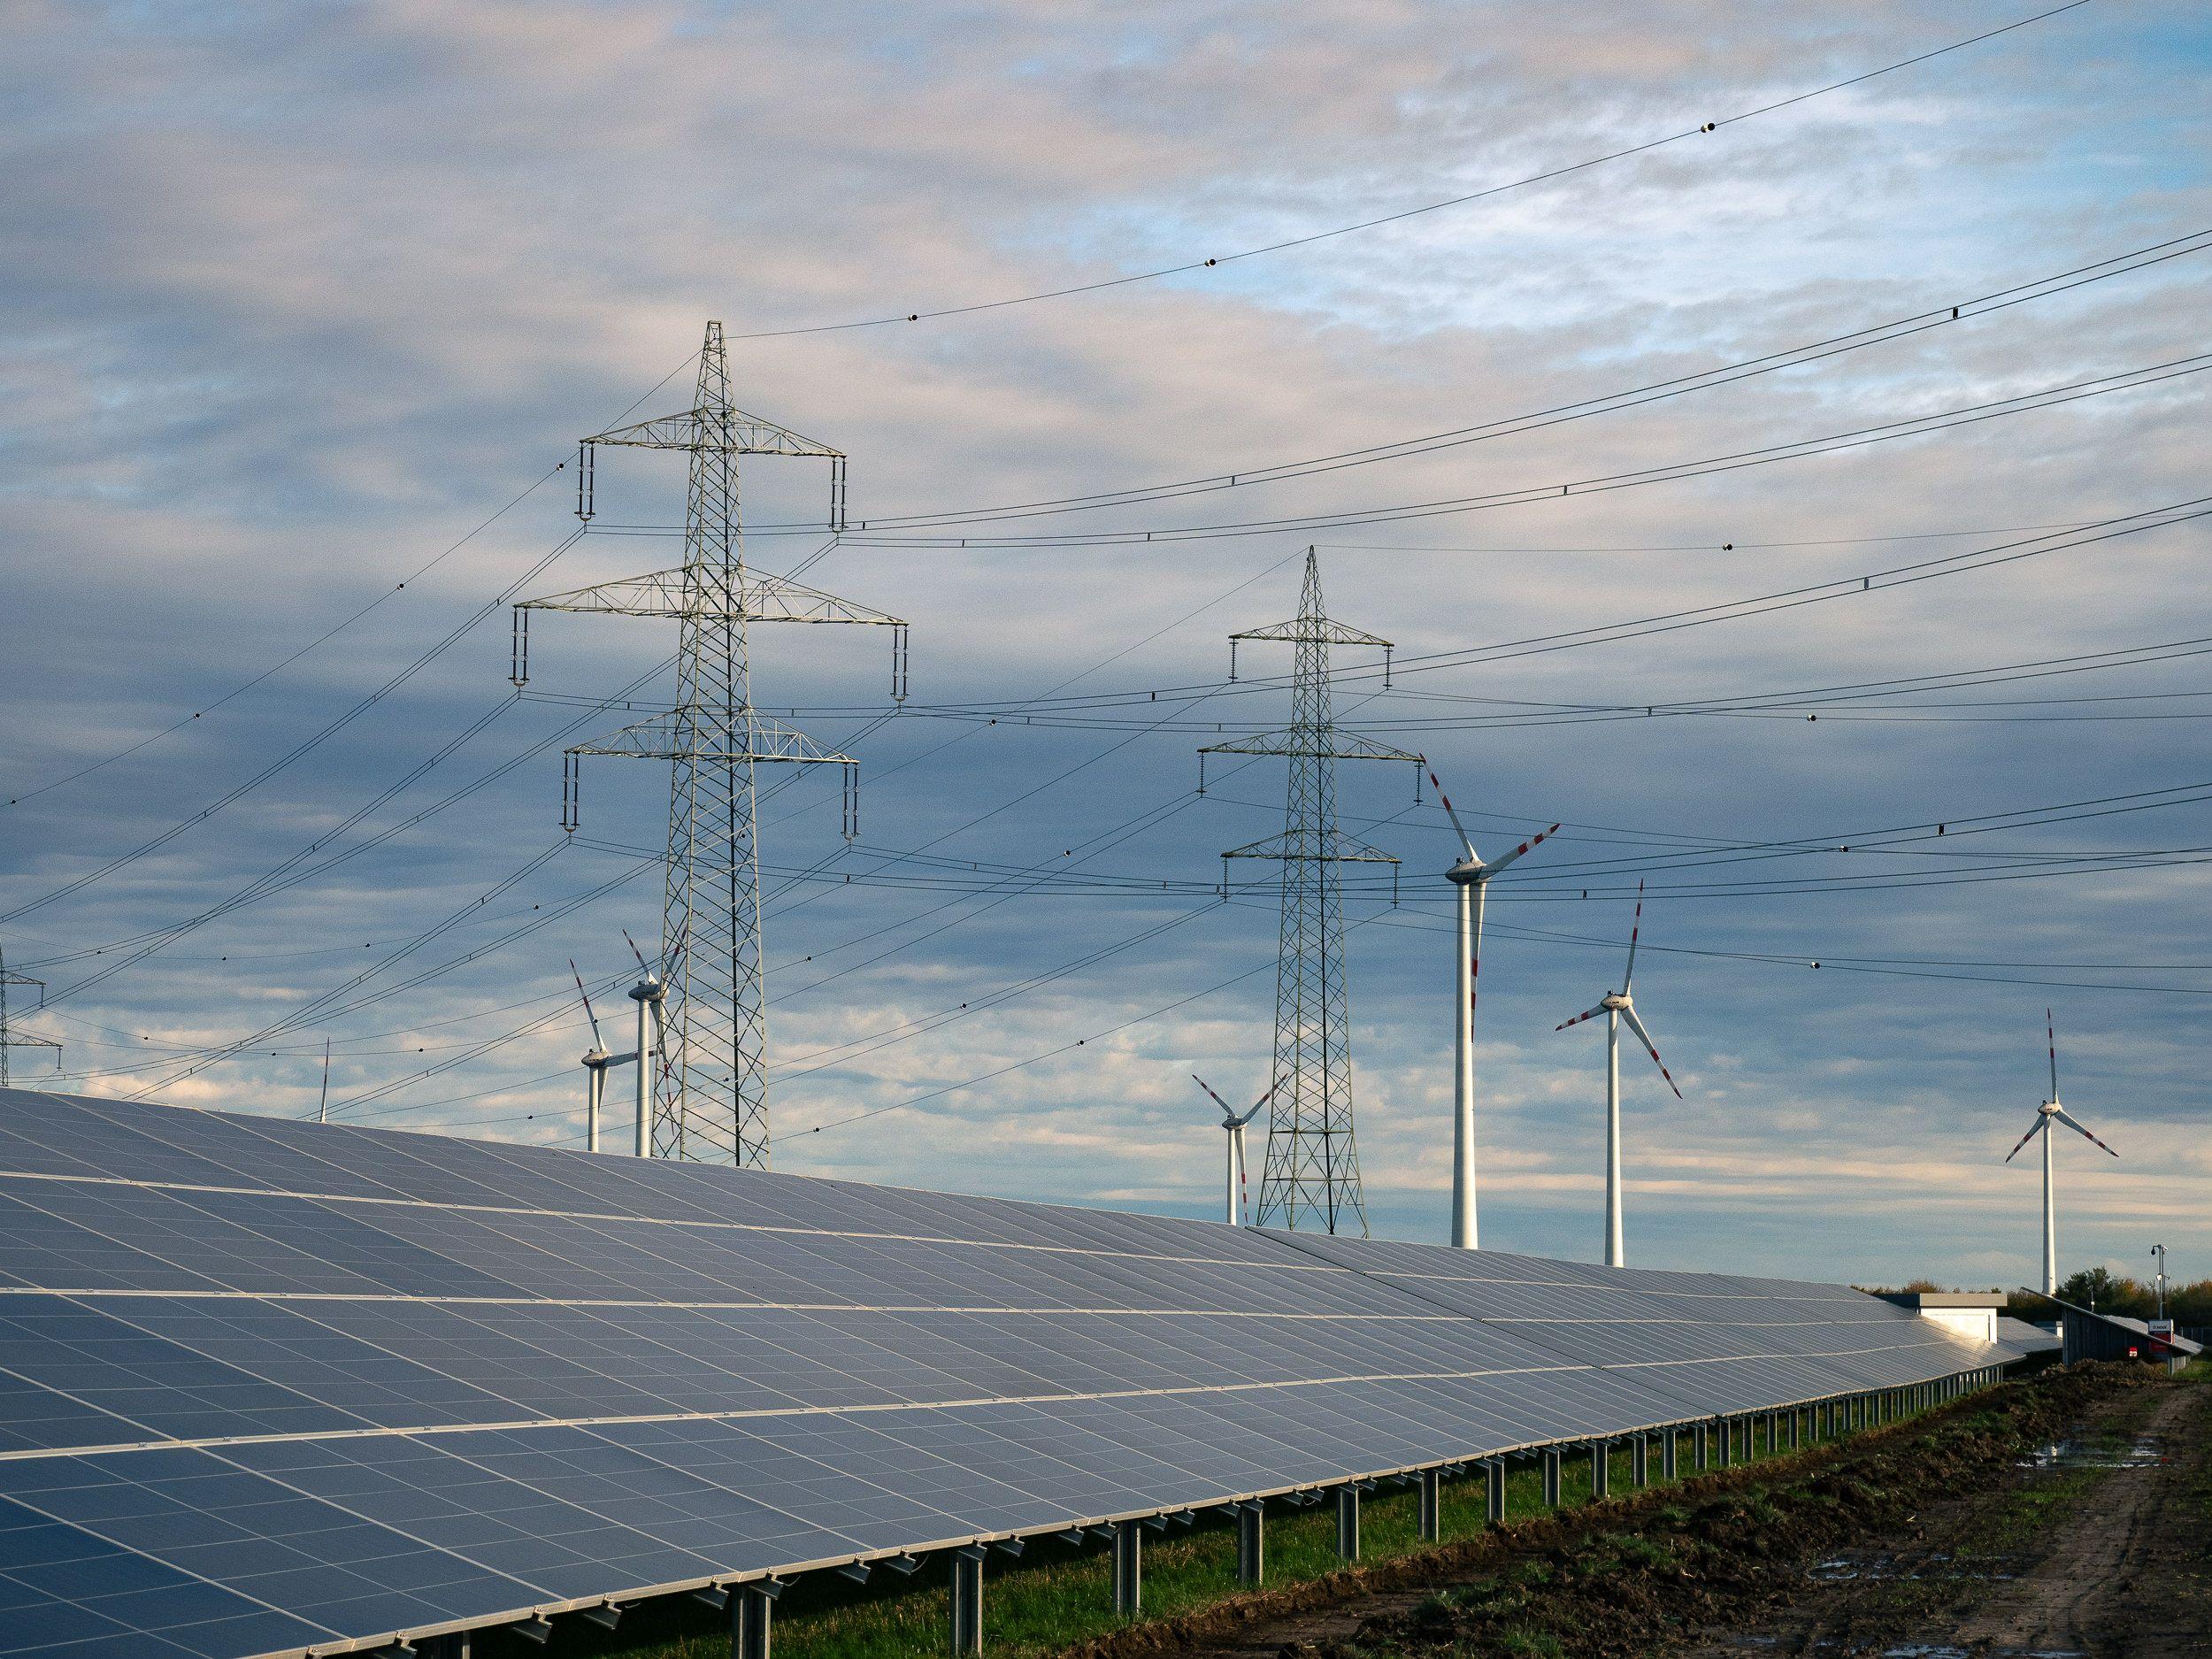 Photovoltaikmodule im unteren Bildabschnitt, Windräder und Strommasten erstrecken sich bis zum Horizont unter einem blauen Himmel mit Wolken.